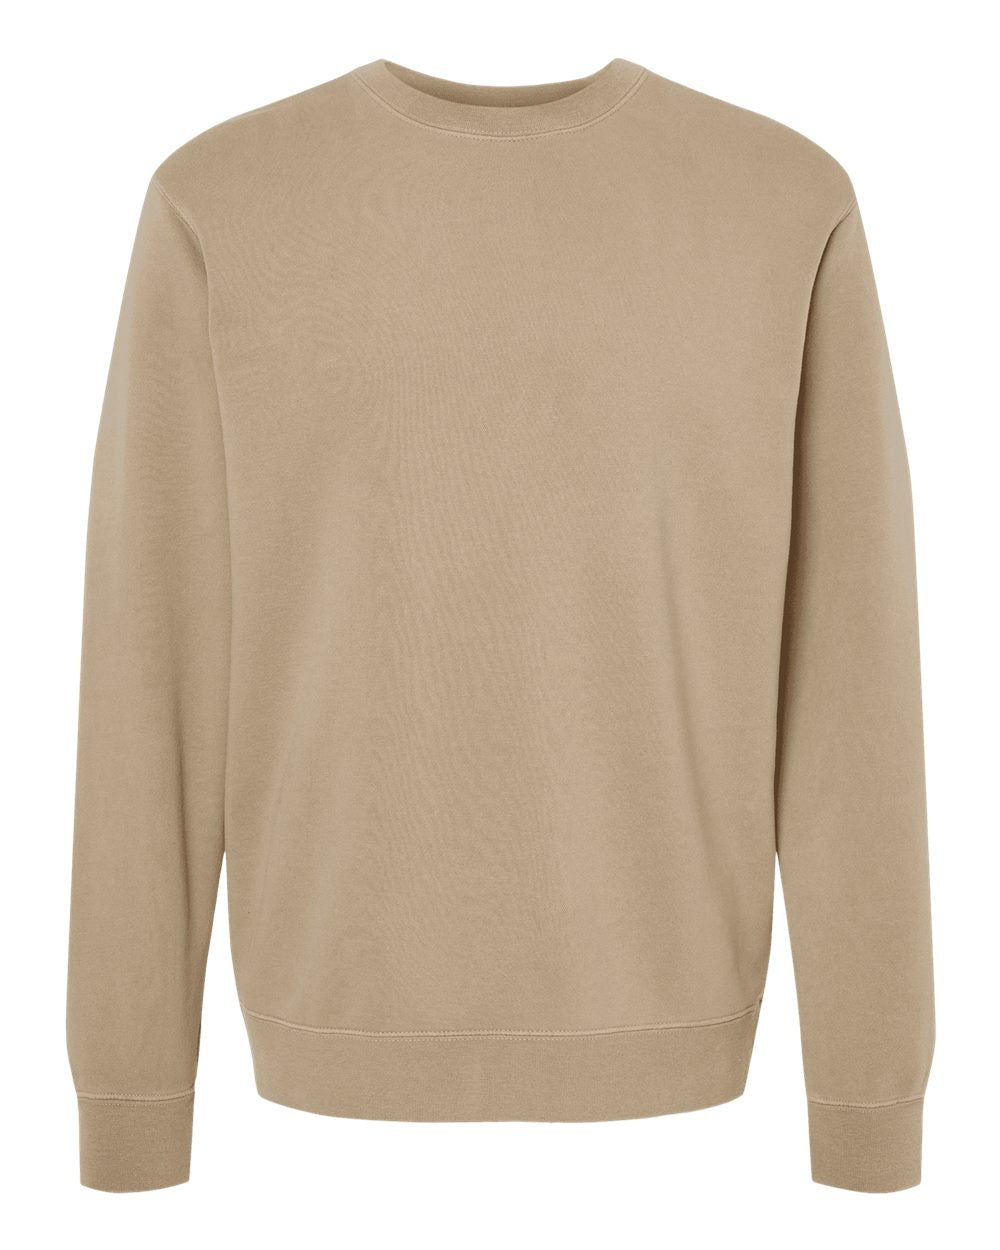 Independent Pigment-Dyed Crewneck Sweatshirt (PRM3500) in Pigment Sandstone